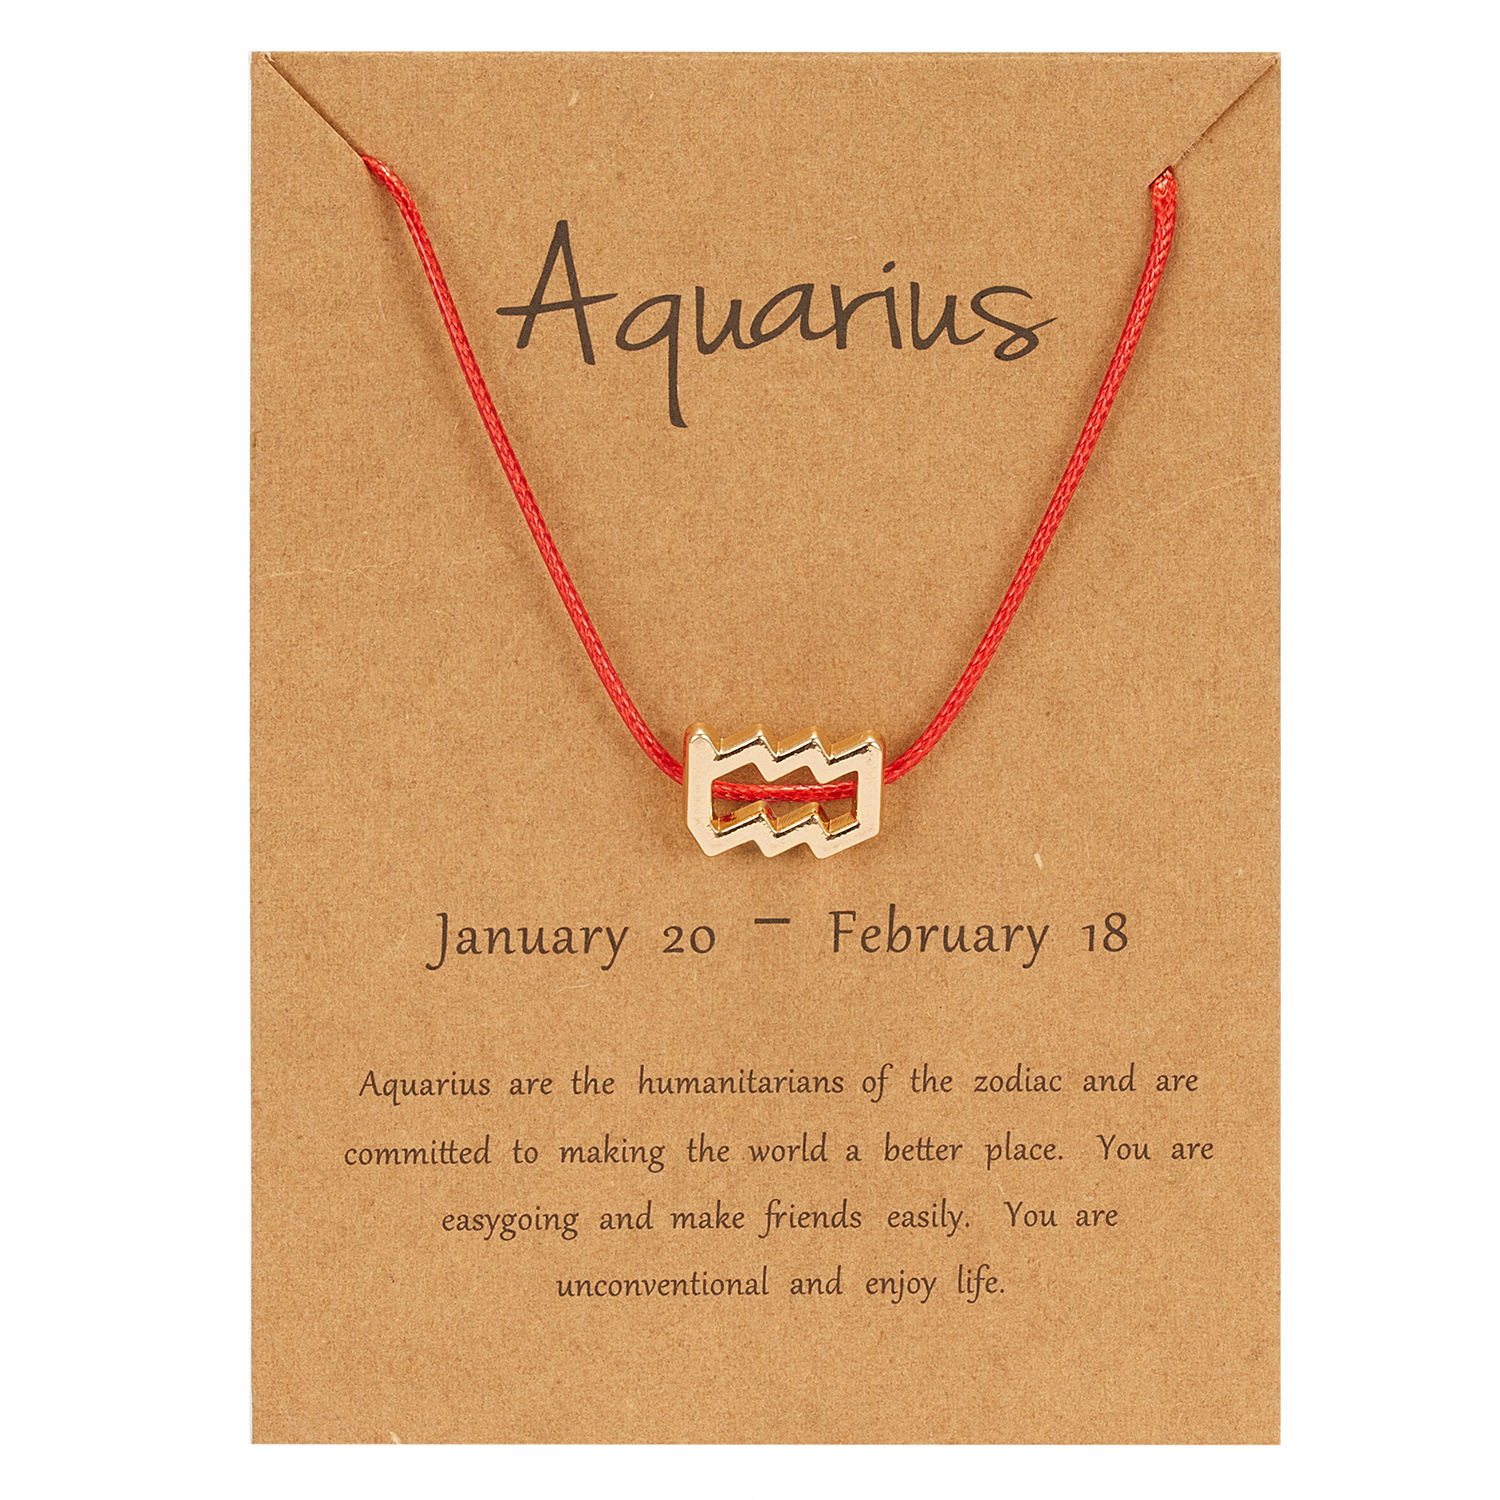 1:Aquarius (Red Rope)